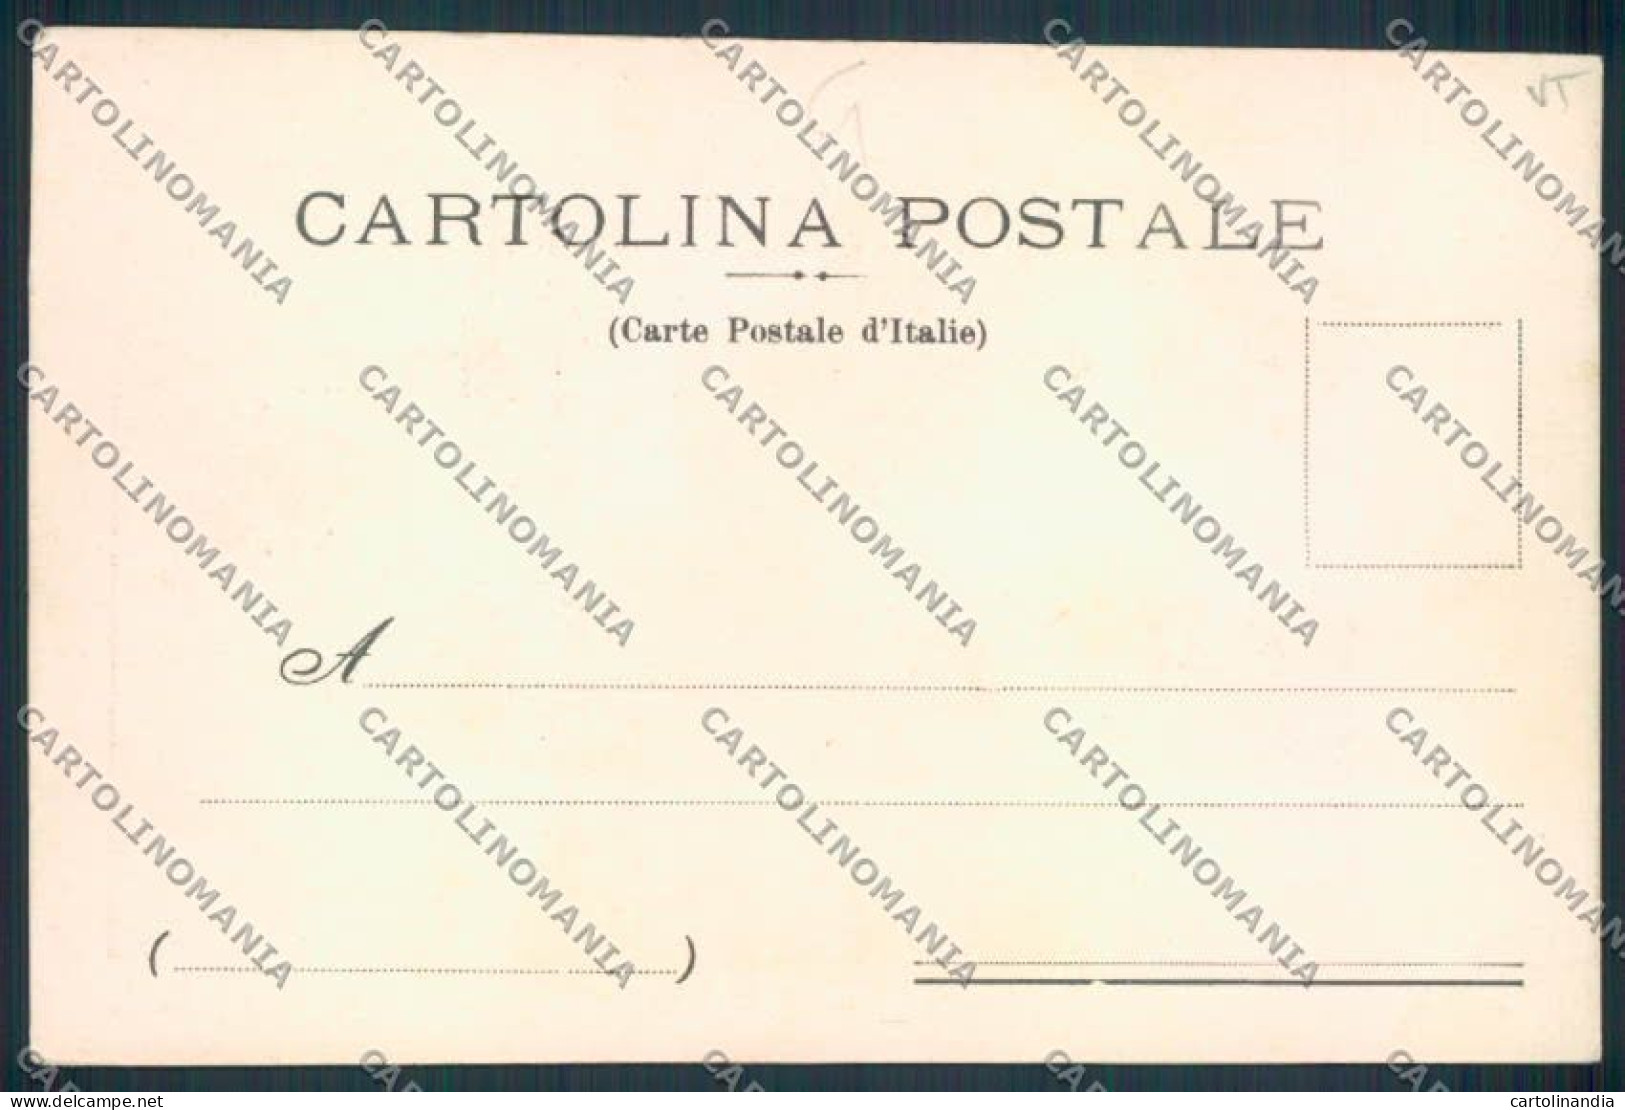 Viterbo Sutri Cartolina MV1546 - Viterbo